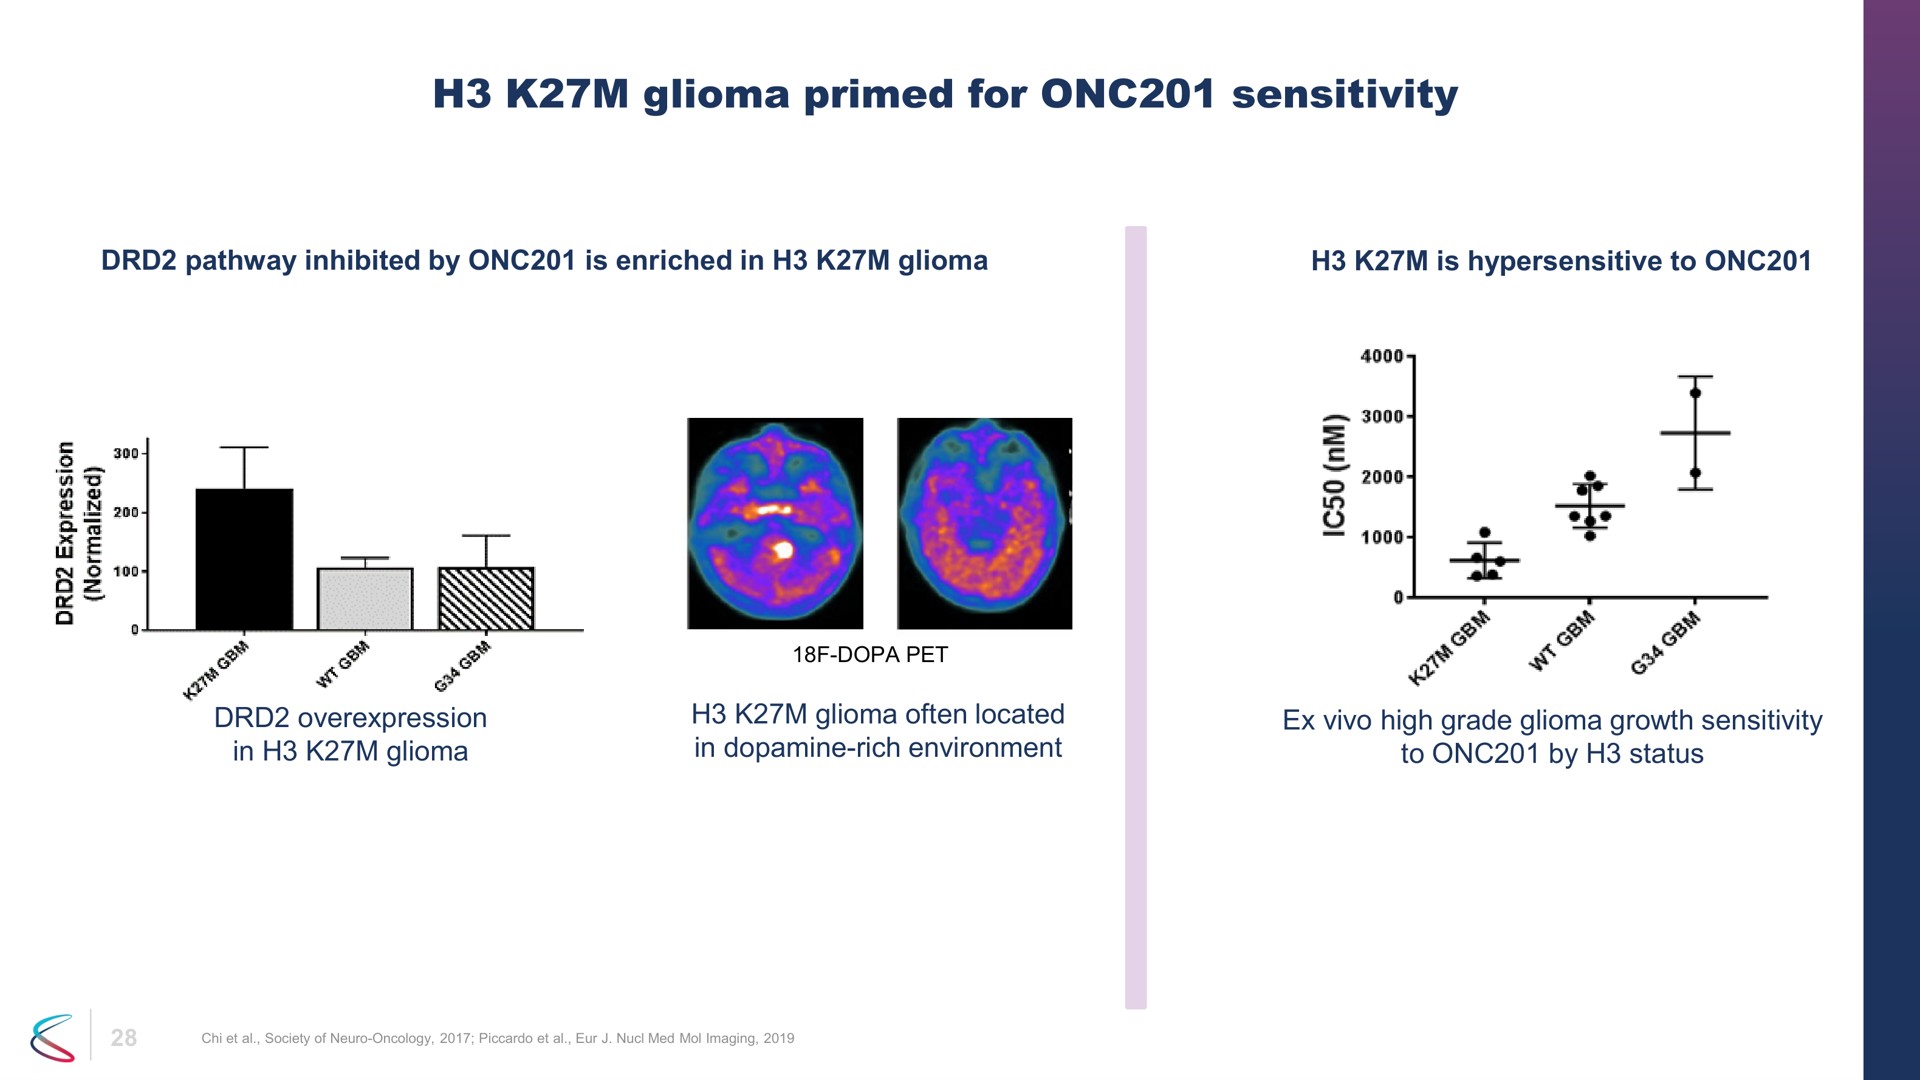 glioma primed for sensitivity | Chimerix